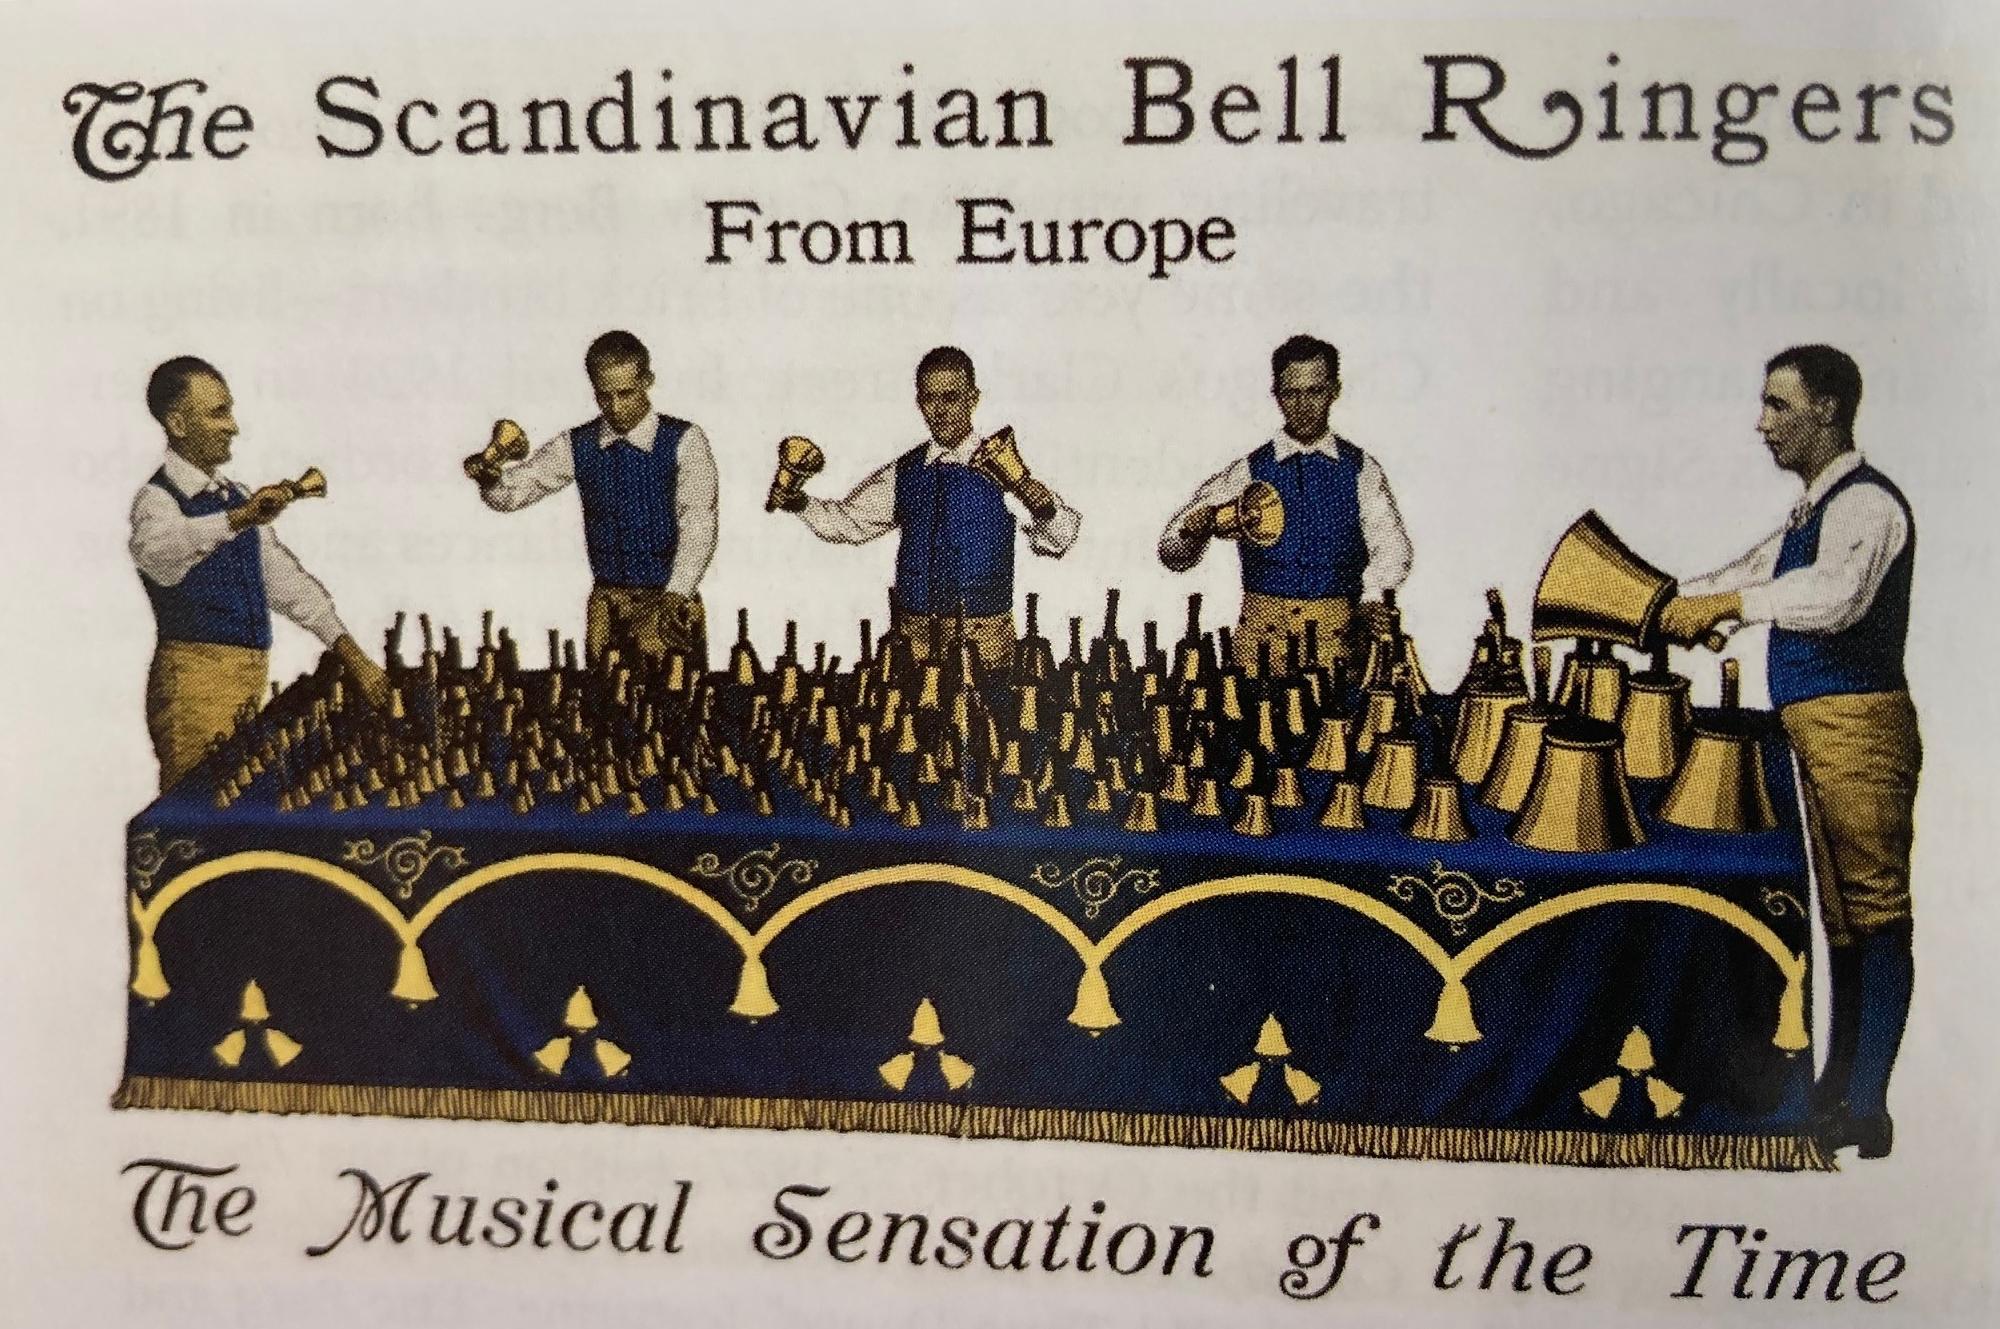 Samtida annons för gruppen The Scandinavian Bell Ringers from Europe med fem män i svenska folkdräkter som spelar på klockor.